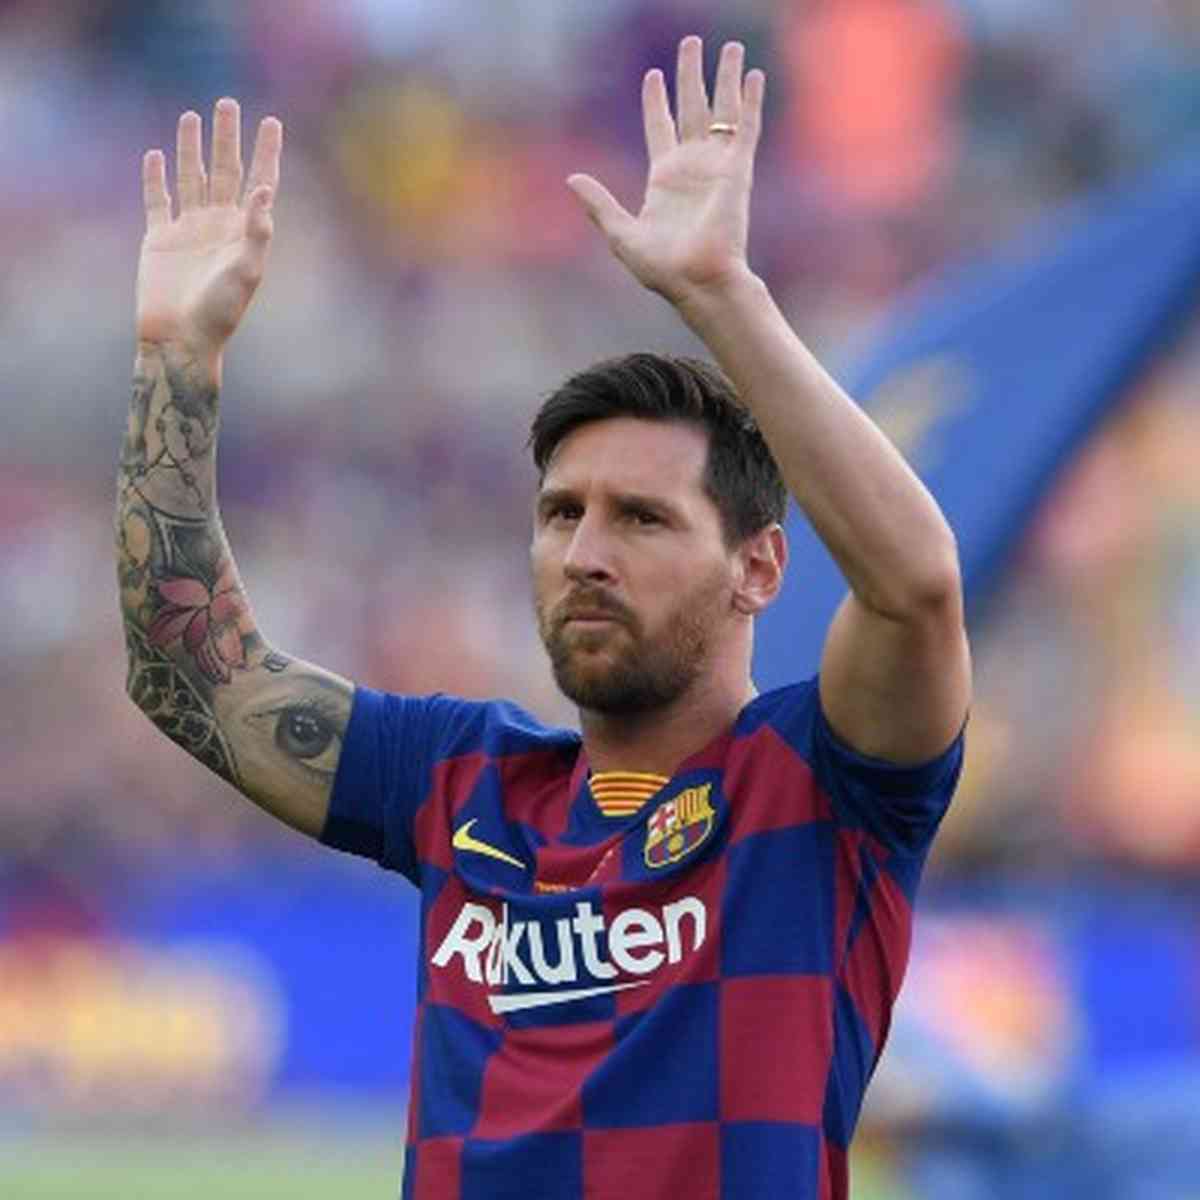 Messi envergonhado 2 em 2023